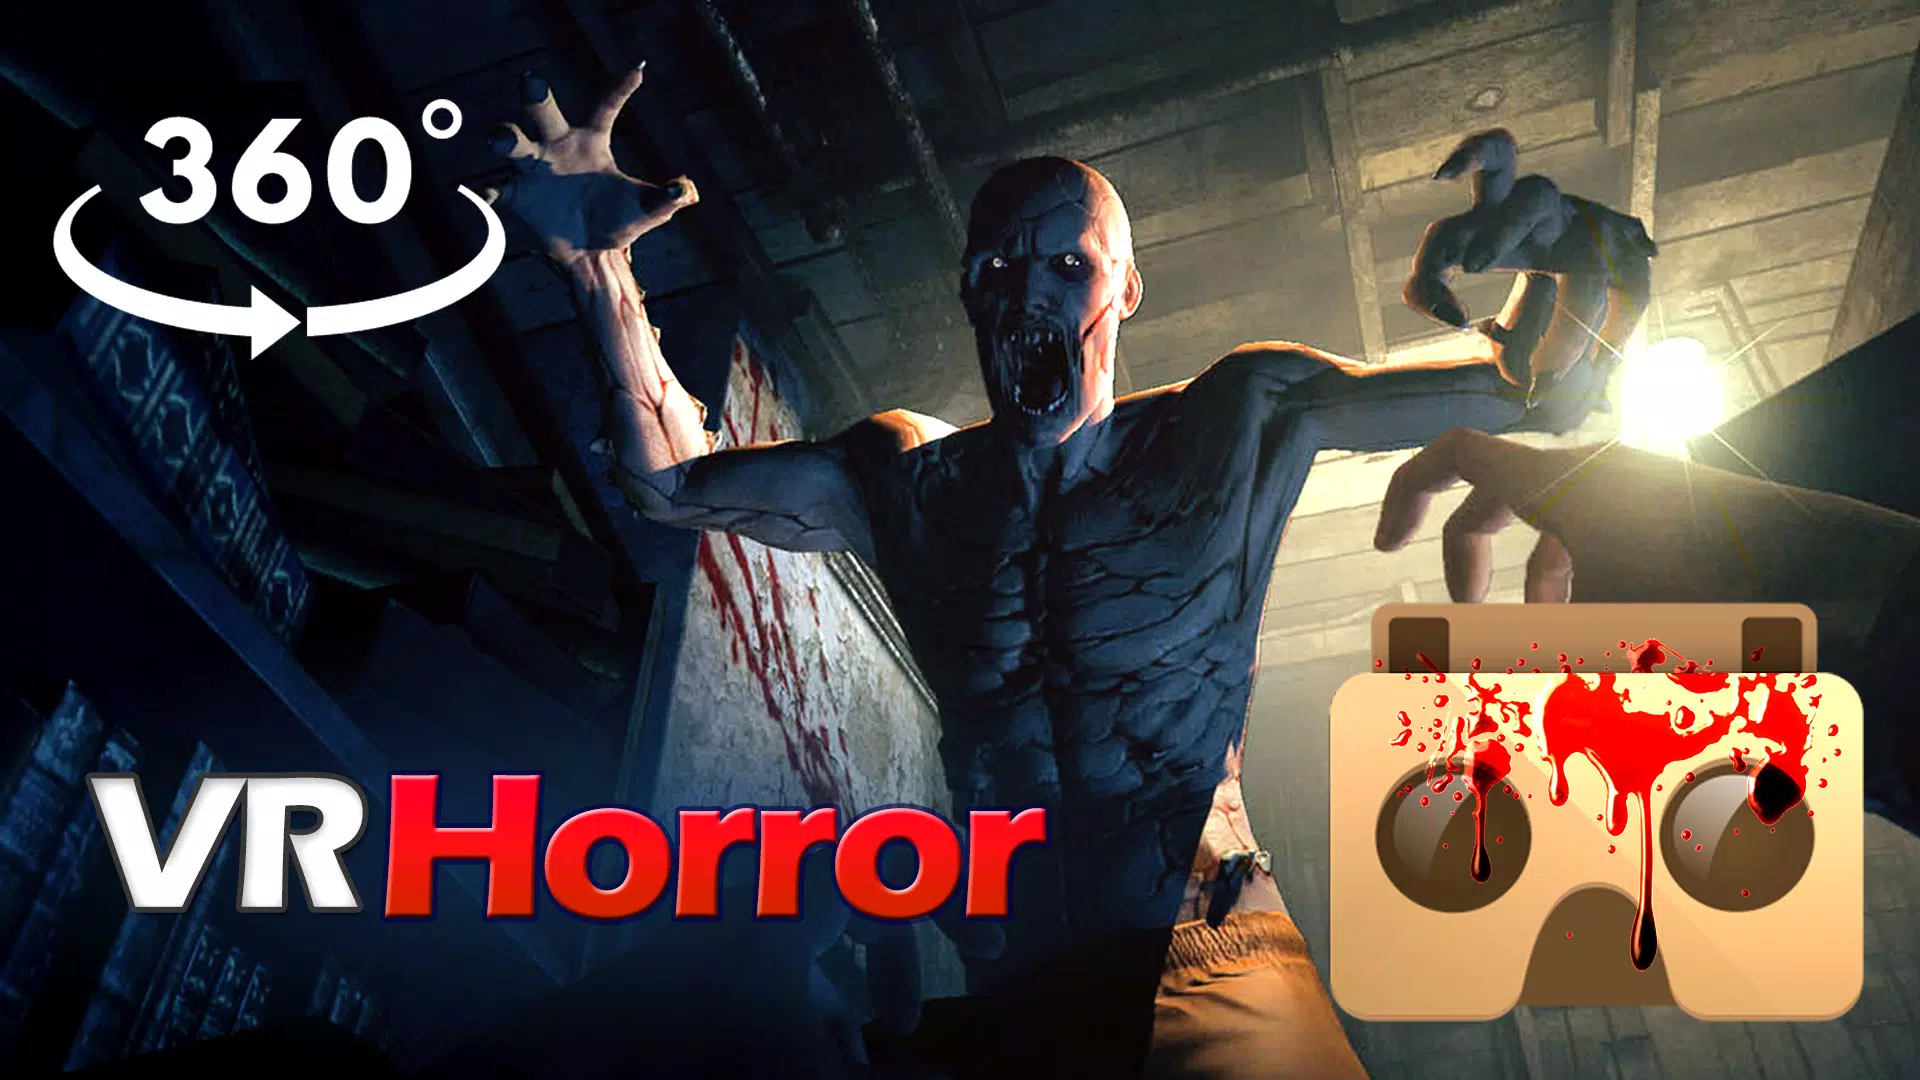 Películas de terror para VR for Android - APK Download